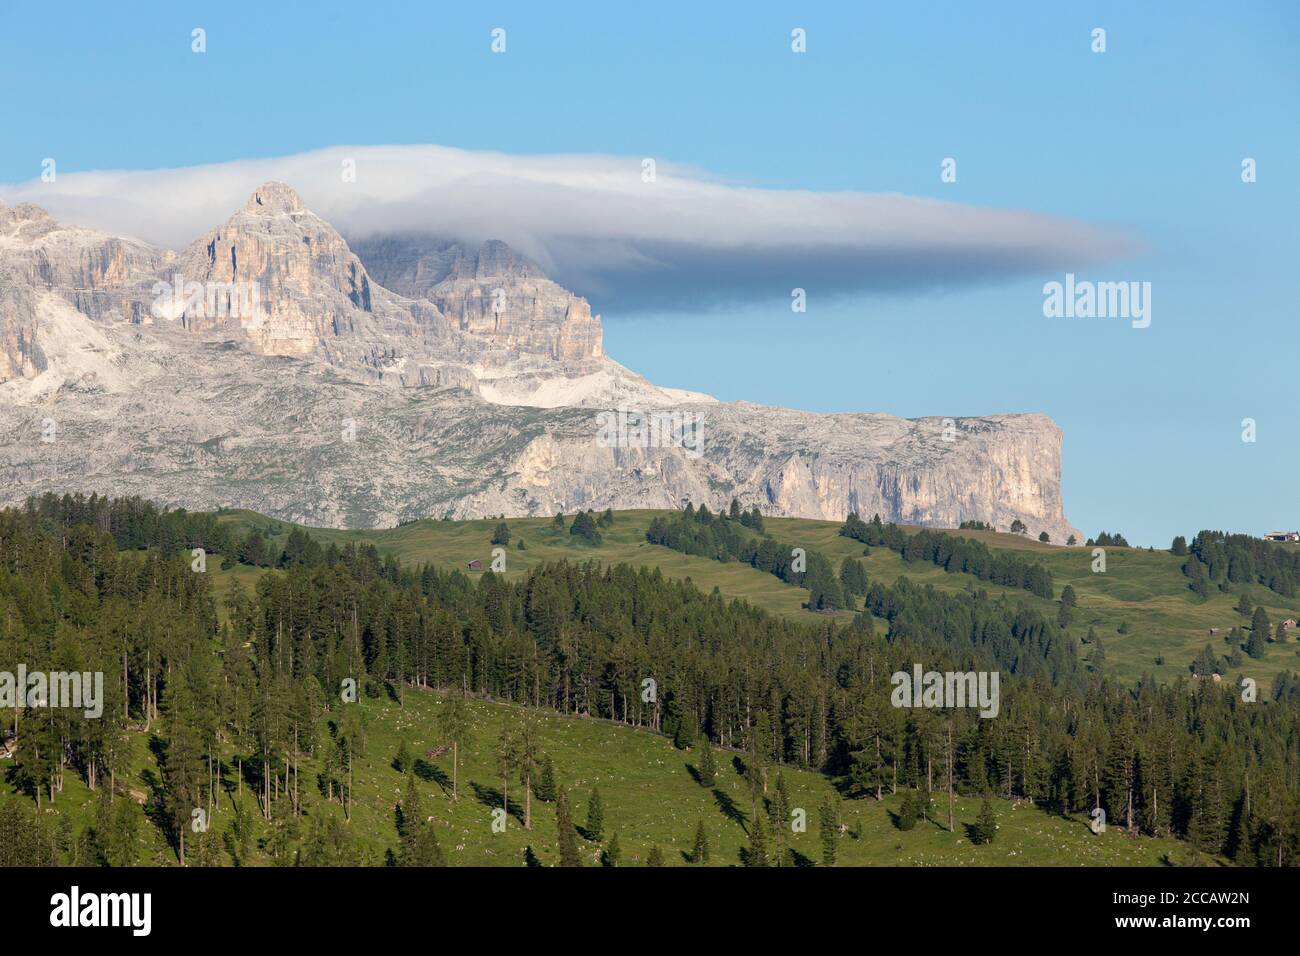 Vue sur une partie du groupe Sella, massif en forme de plateau dans les Dolomites du nord de l'Italie Banque D'Images